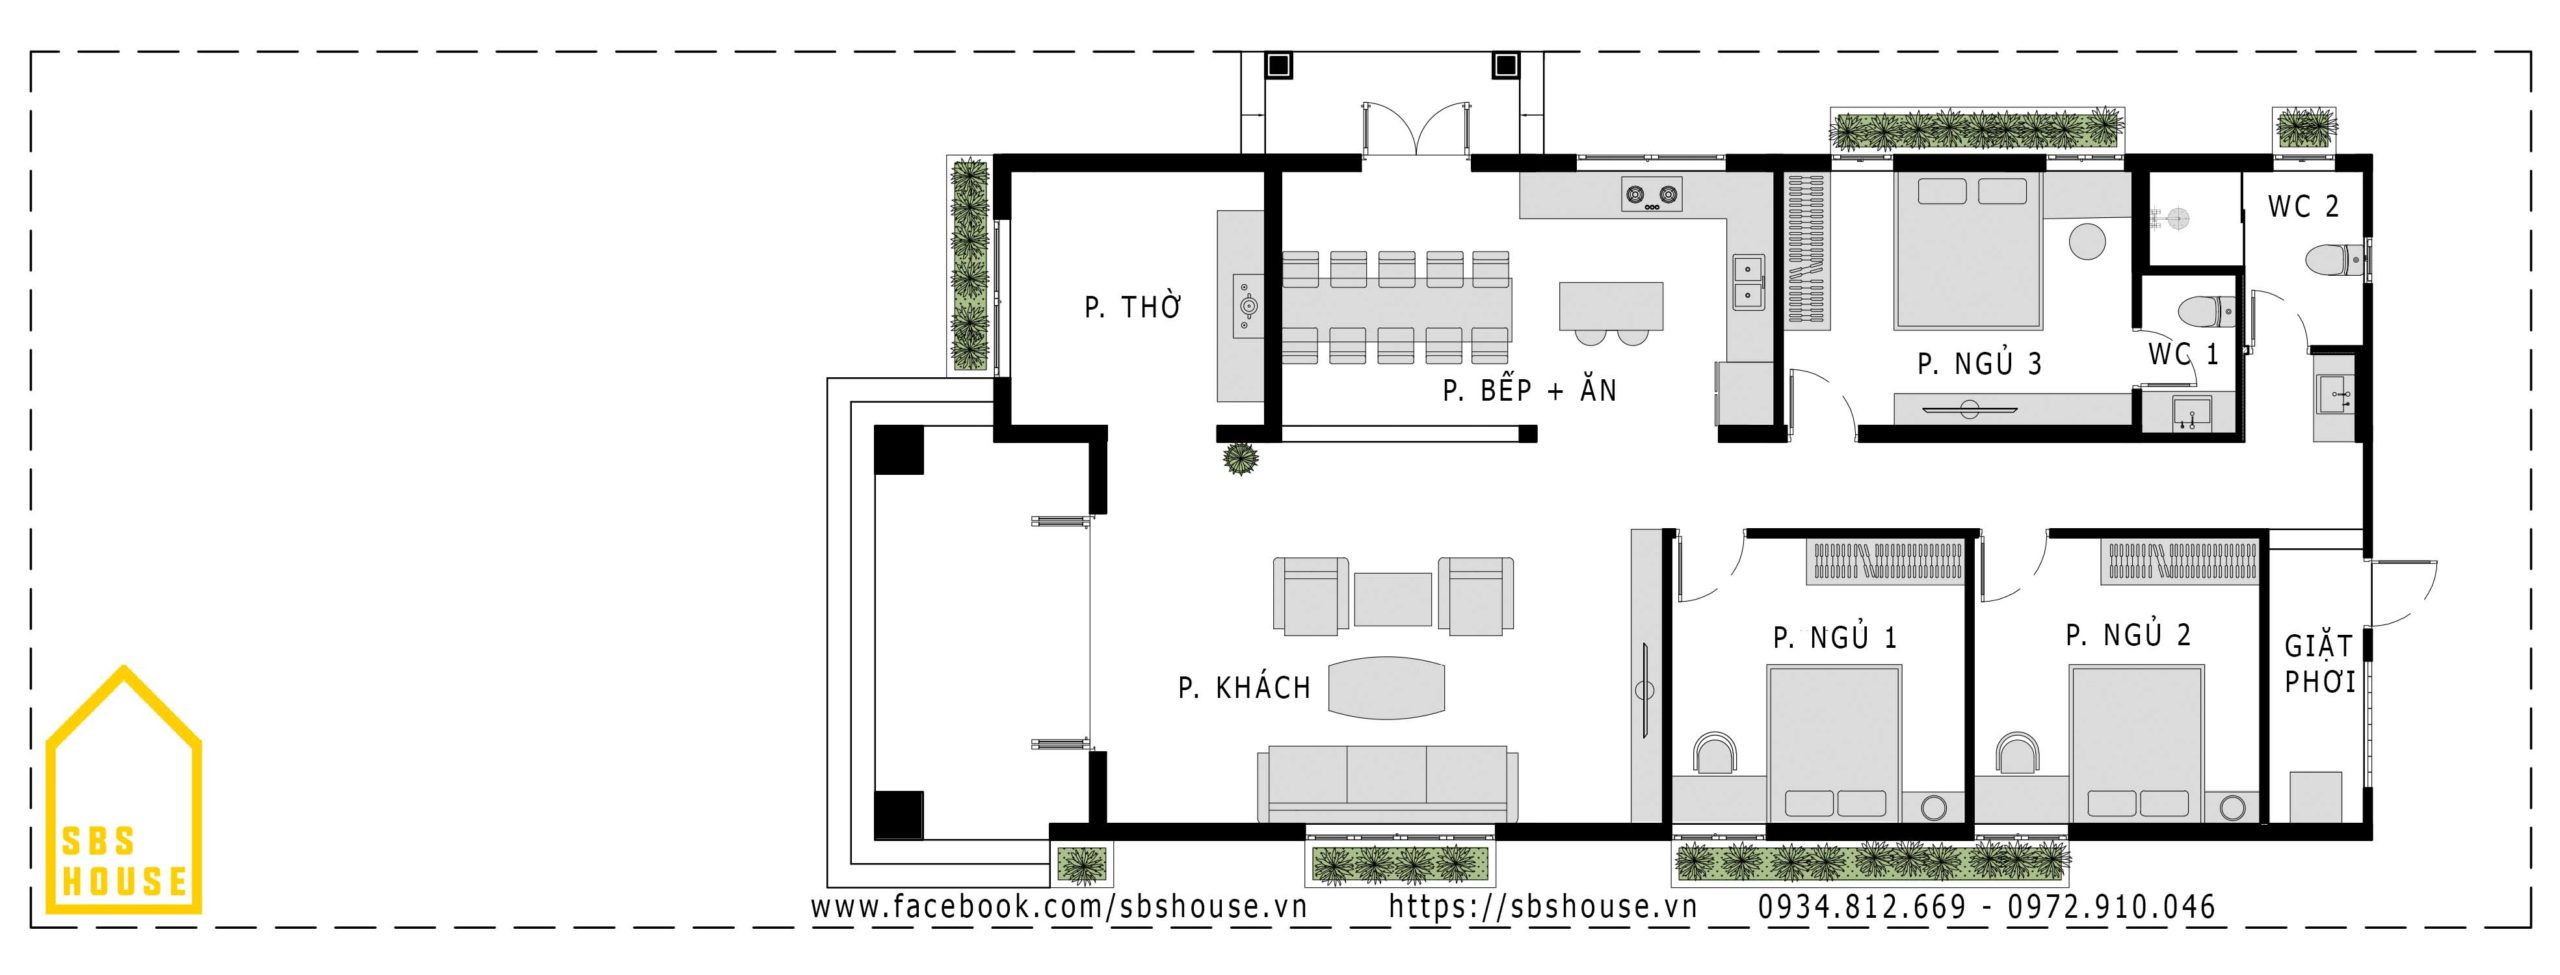 37 mẫu nhà 1 tầng 3 phòng ngủ hiện đại gia chủ muốn xây nhất - Kiến trúc  Angcovat